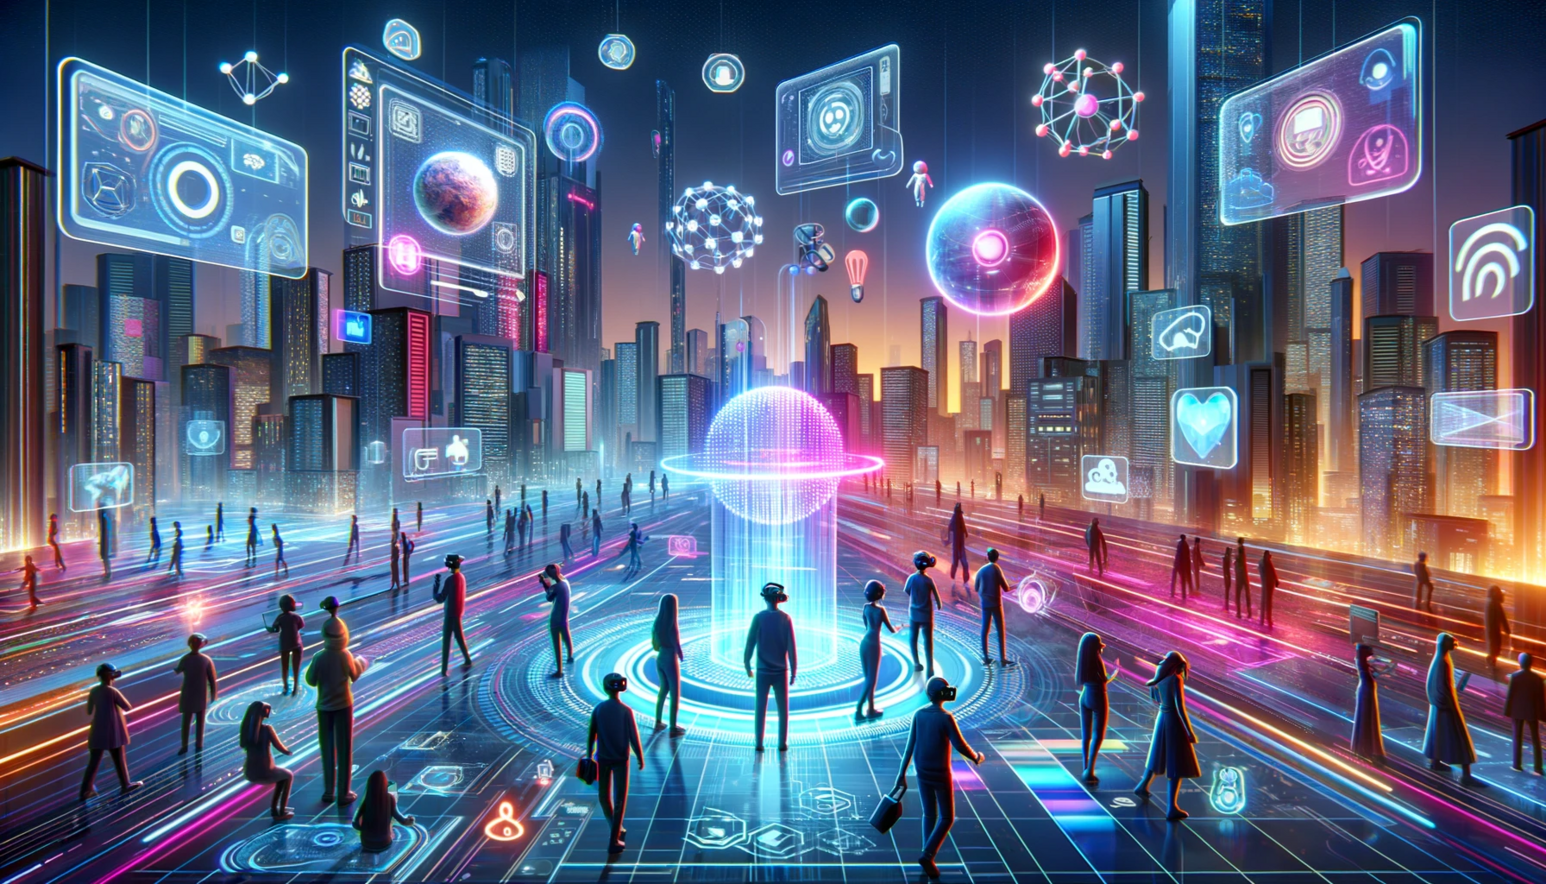 Das Bild zeigt eine futuristische digitale Landschaft, die den Metaversum repräsentiert, mit Elementen der virtuellen Realität, holographischen Schnittstellen und Menschen, die VR-Headsets in einer hochmodernen Stadtumgebung tragen. Leuchtende Neonlinien durchziehen den Boden und verbinden die Menschen mit verschiedenen interaktiven Displays, die über den Köpfen schweben und Symbole für Kommunikation, soziale Medien und Technologie anzeigen. Die Stadt im Hintergrund ist von hohen Wolkenkratzern gesäumt, die in die Nacht glitzern, was eine lebhafte und vernetzte Atmosphäre schafft.